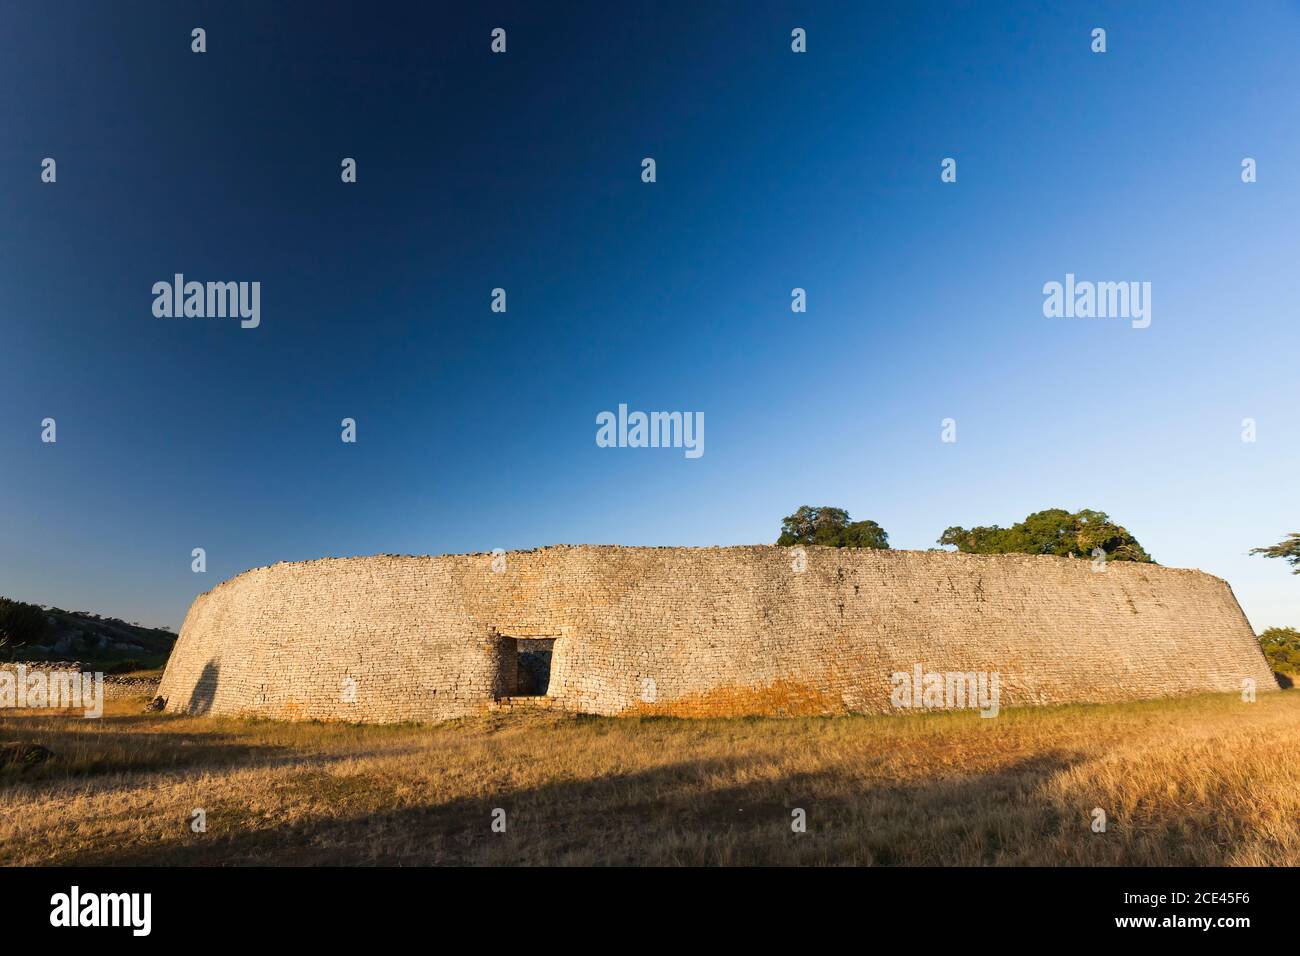 Ruines du grand Zimbabwe, structure principale 'la Grande enceinte', ancienne capitale de la civilisation Bantu, province de Masvingo, Zimbabwe, Afrique Banque D'Images